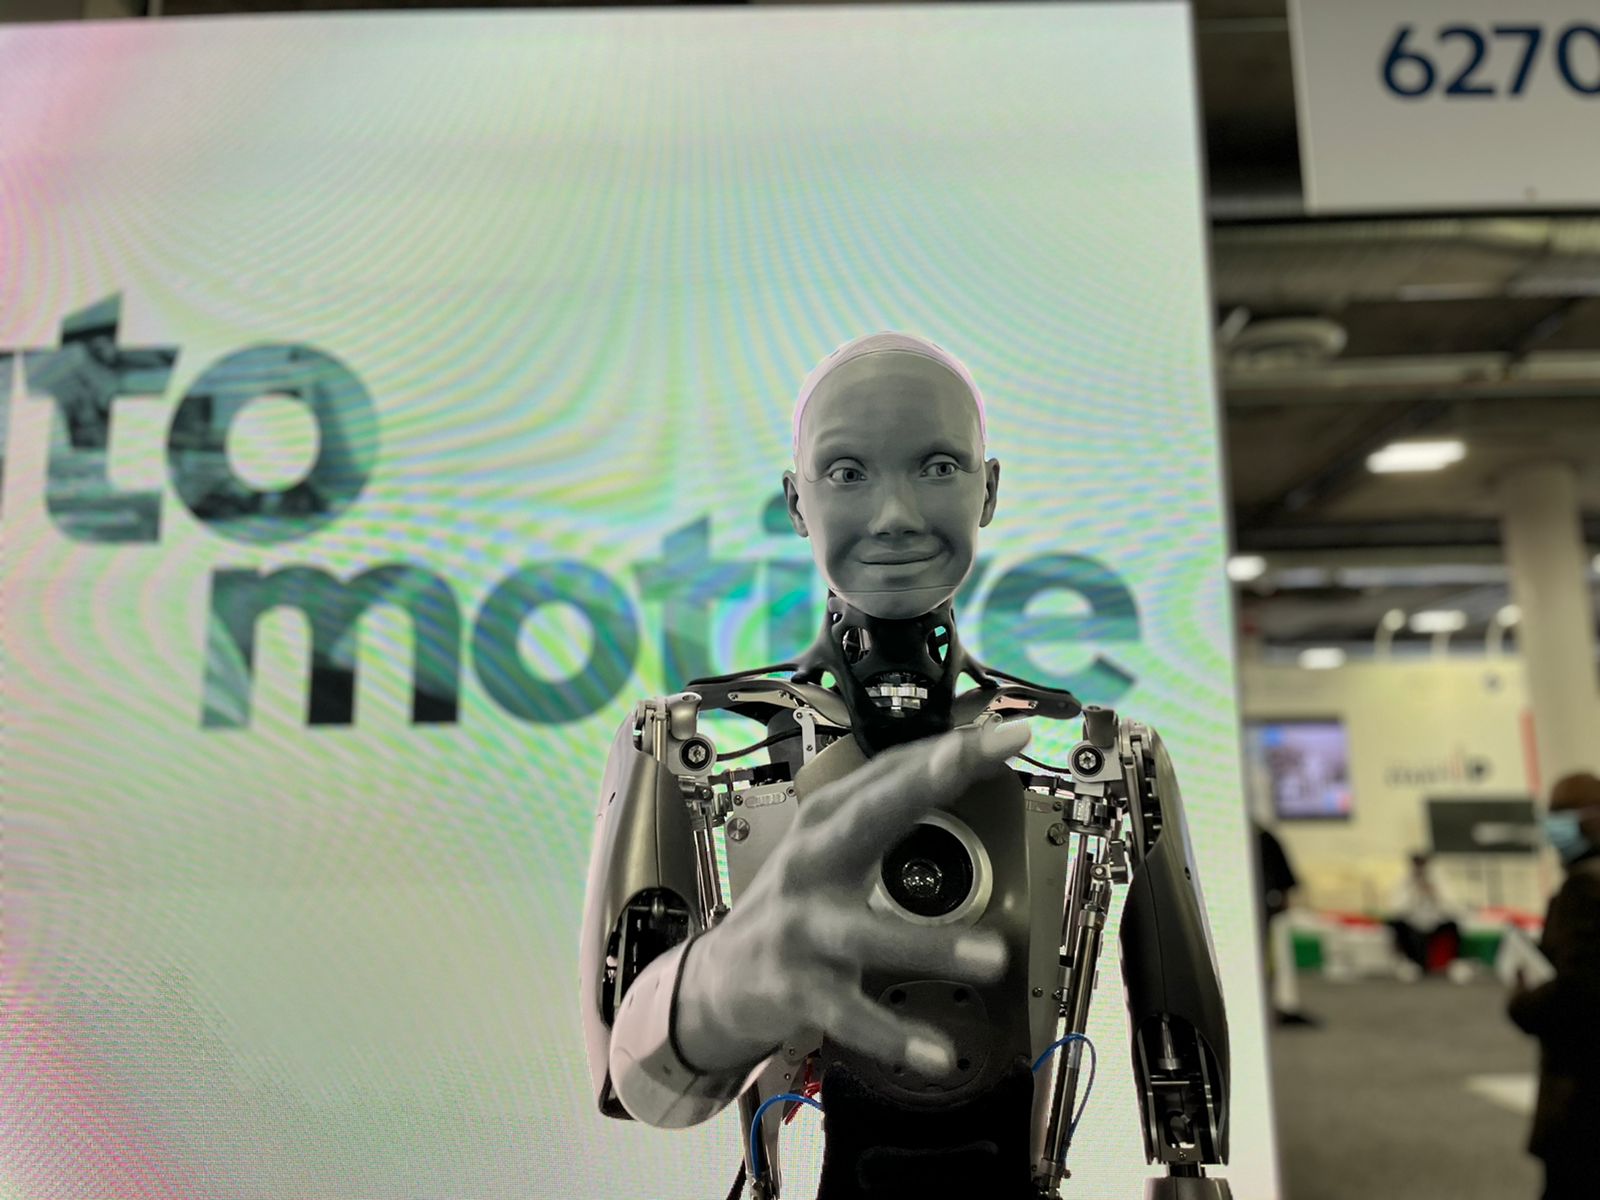 Conversei com a Ameca, robô humanoide exibida na CES 2022